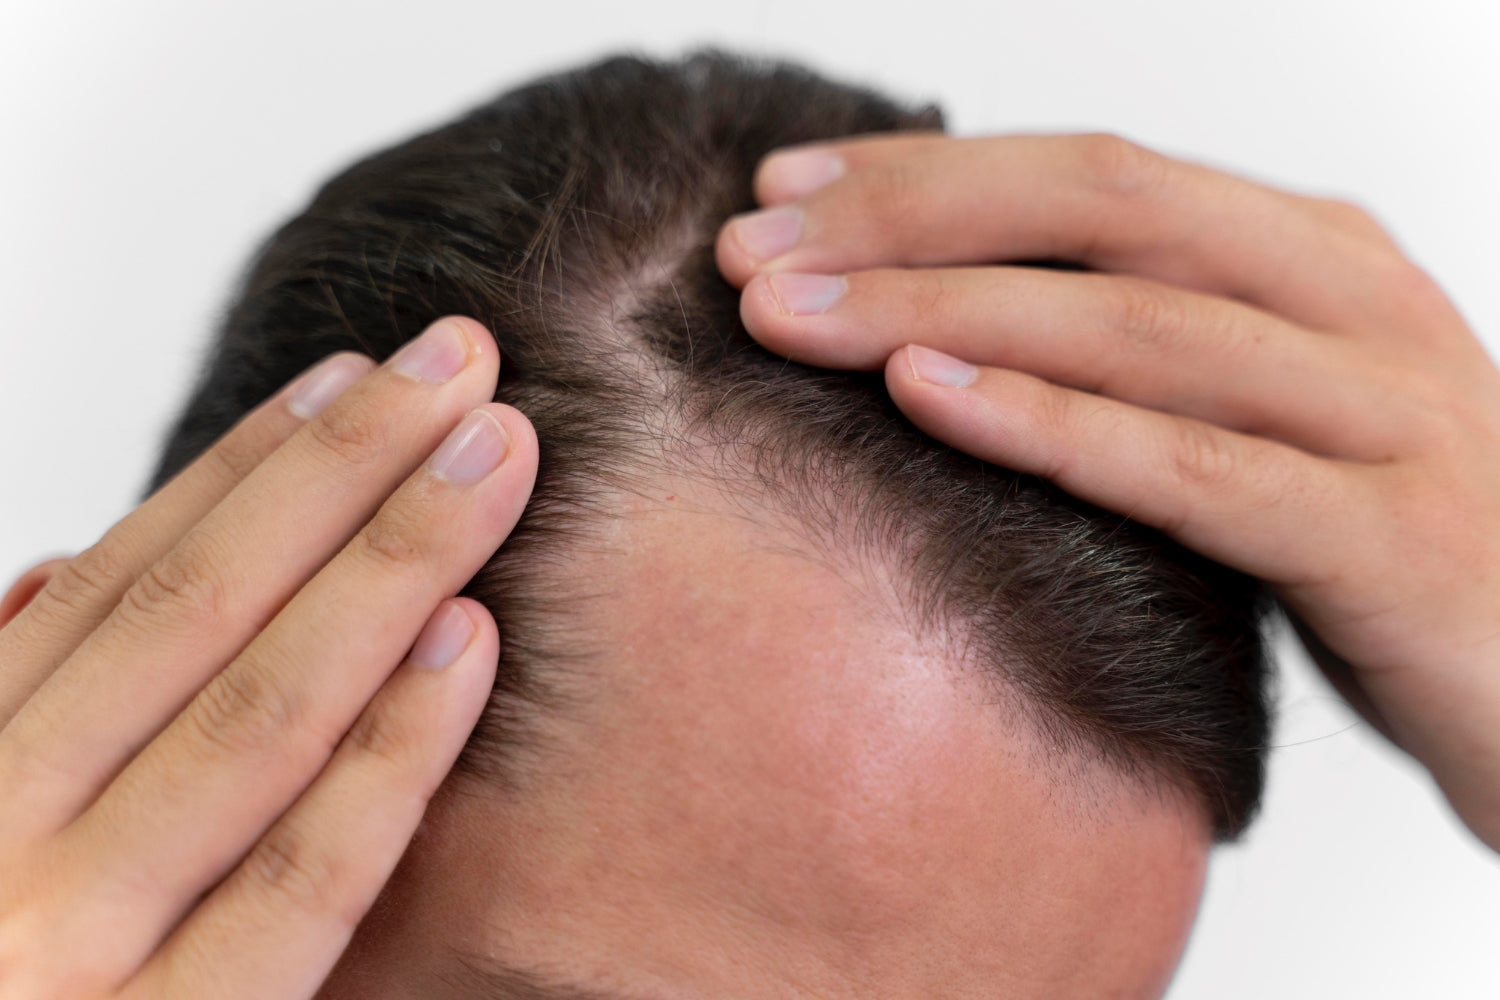 Scalp massage can prevent hair loss